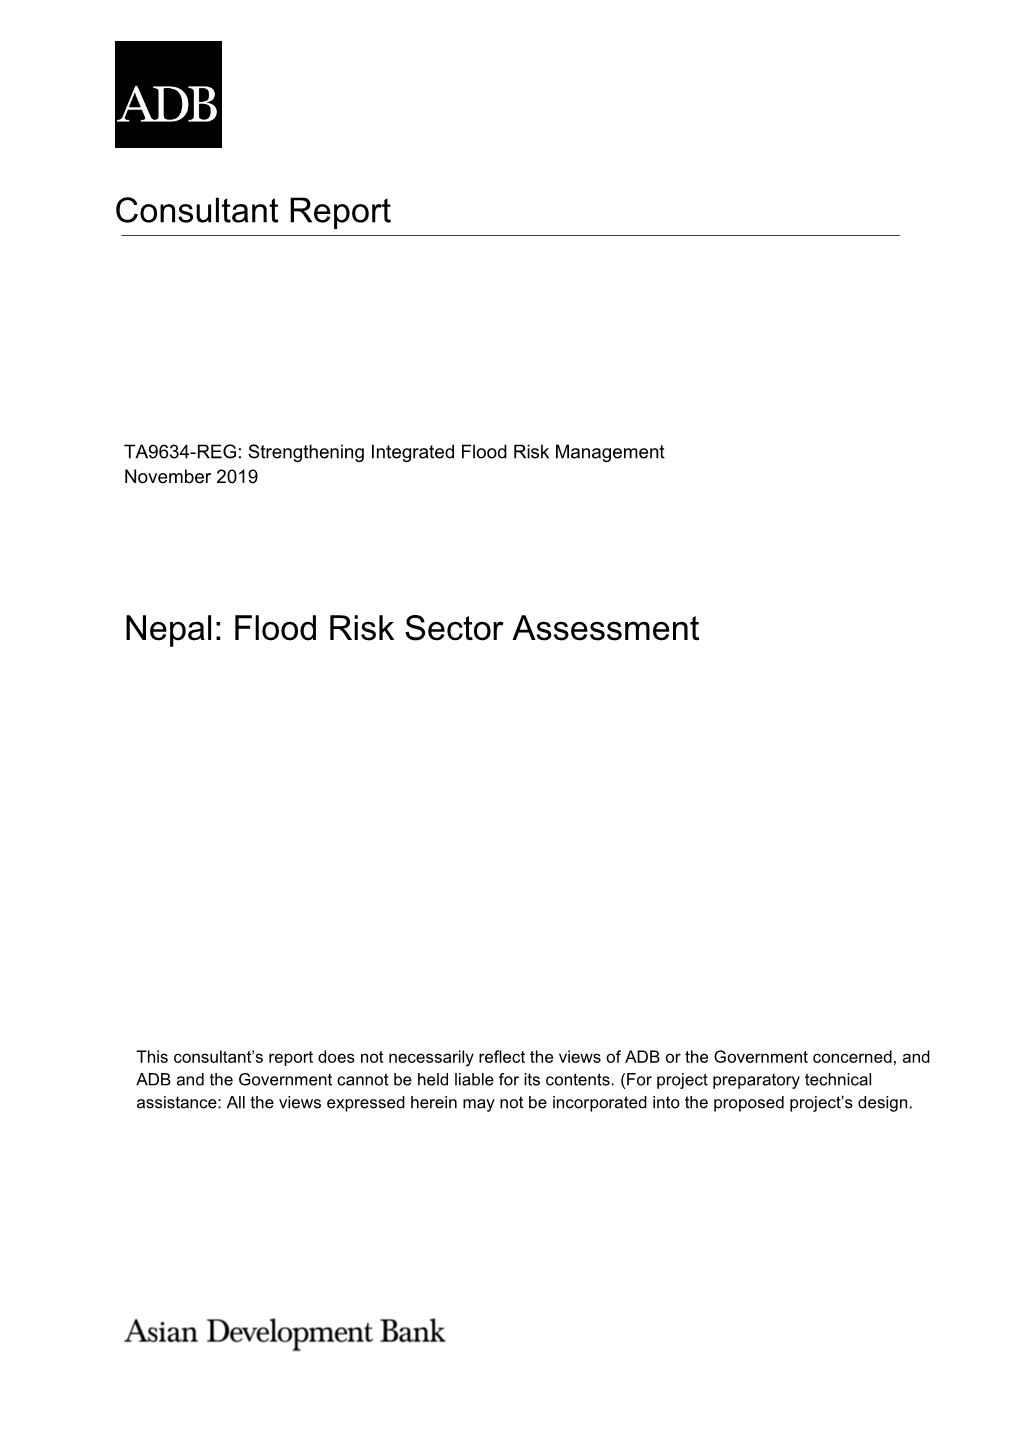 Nepal: Flood Risk Sector Assessment